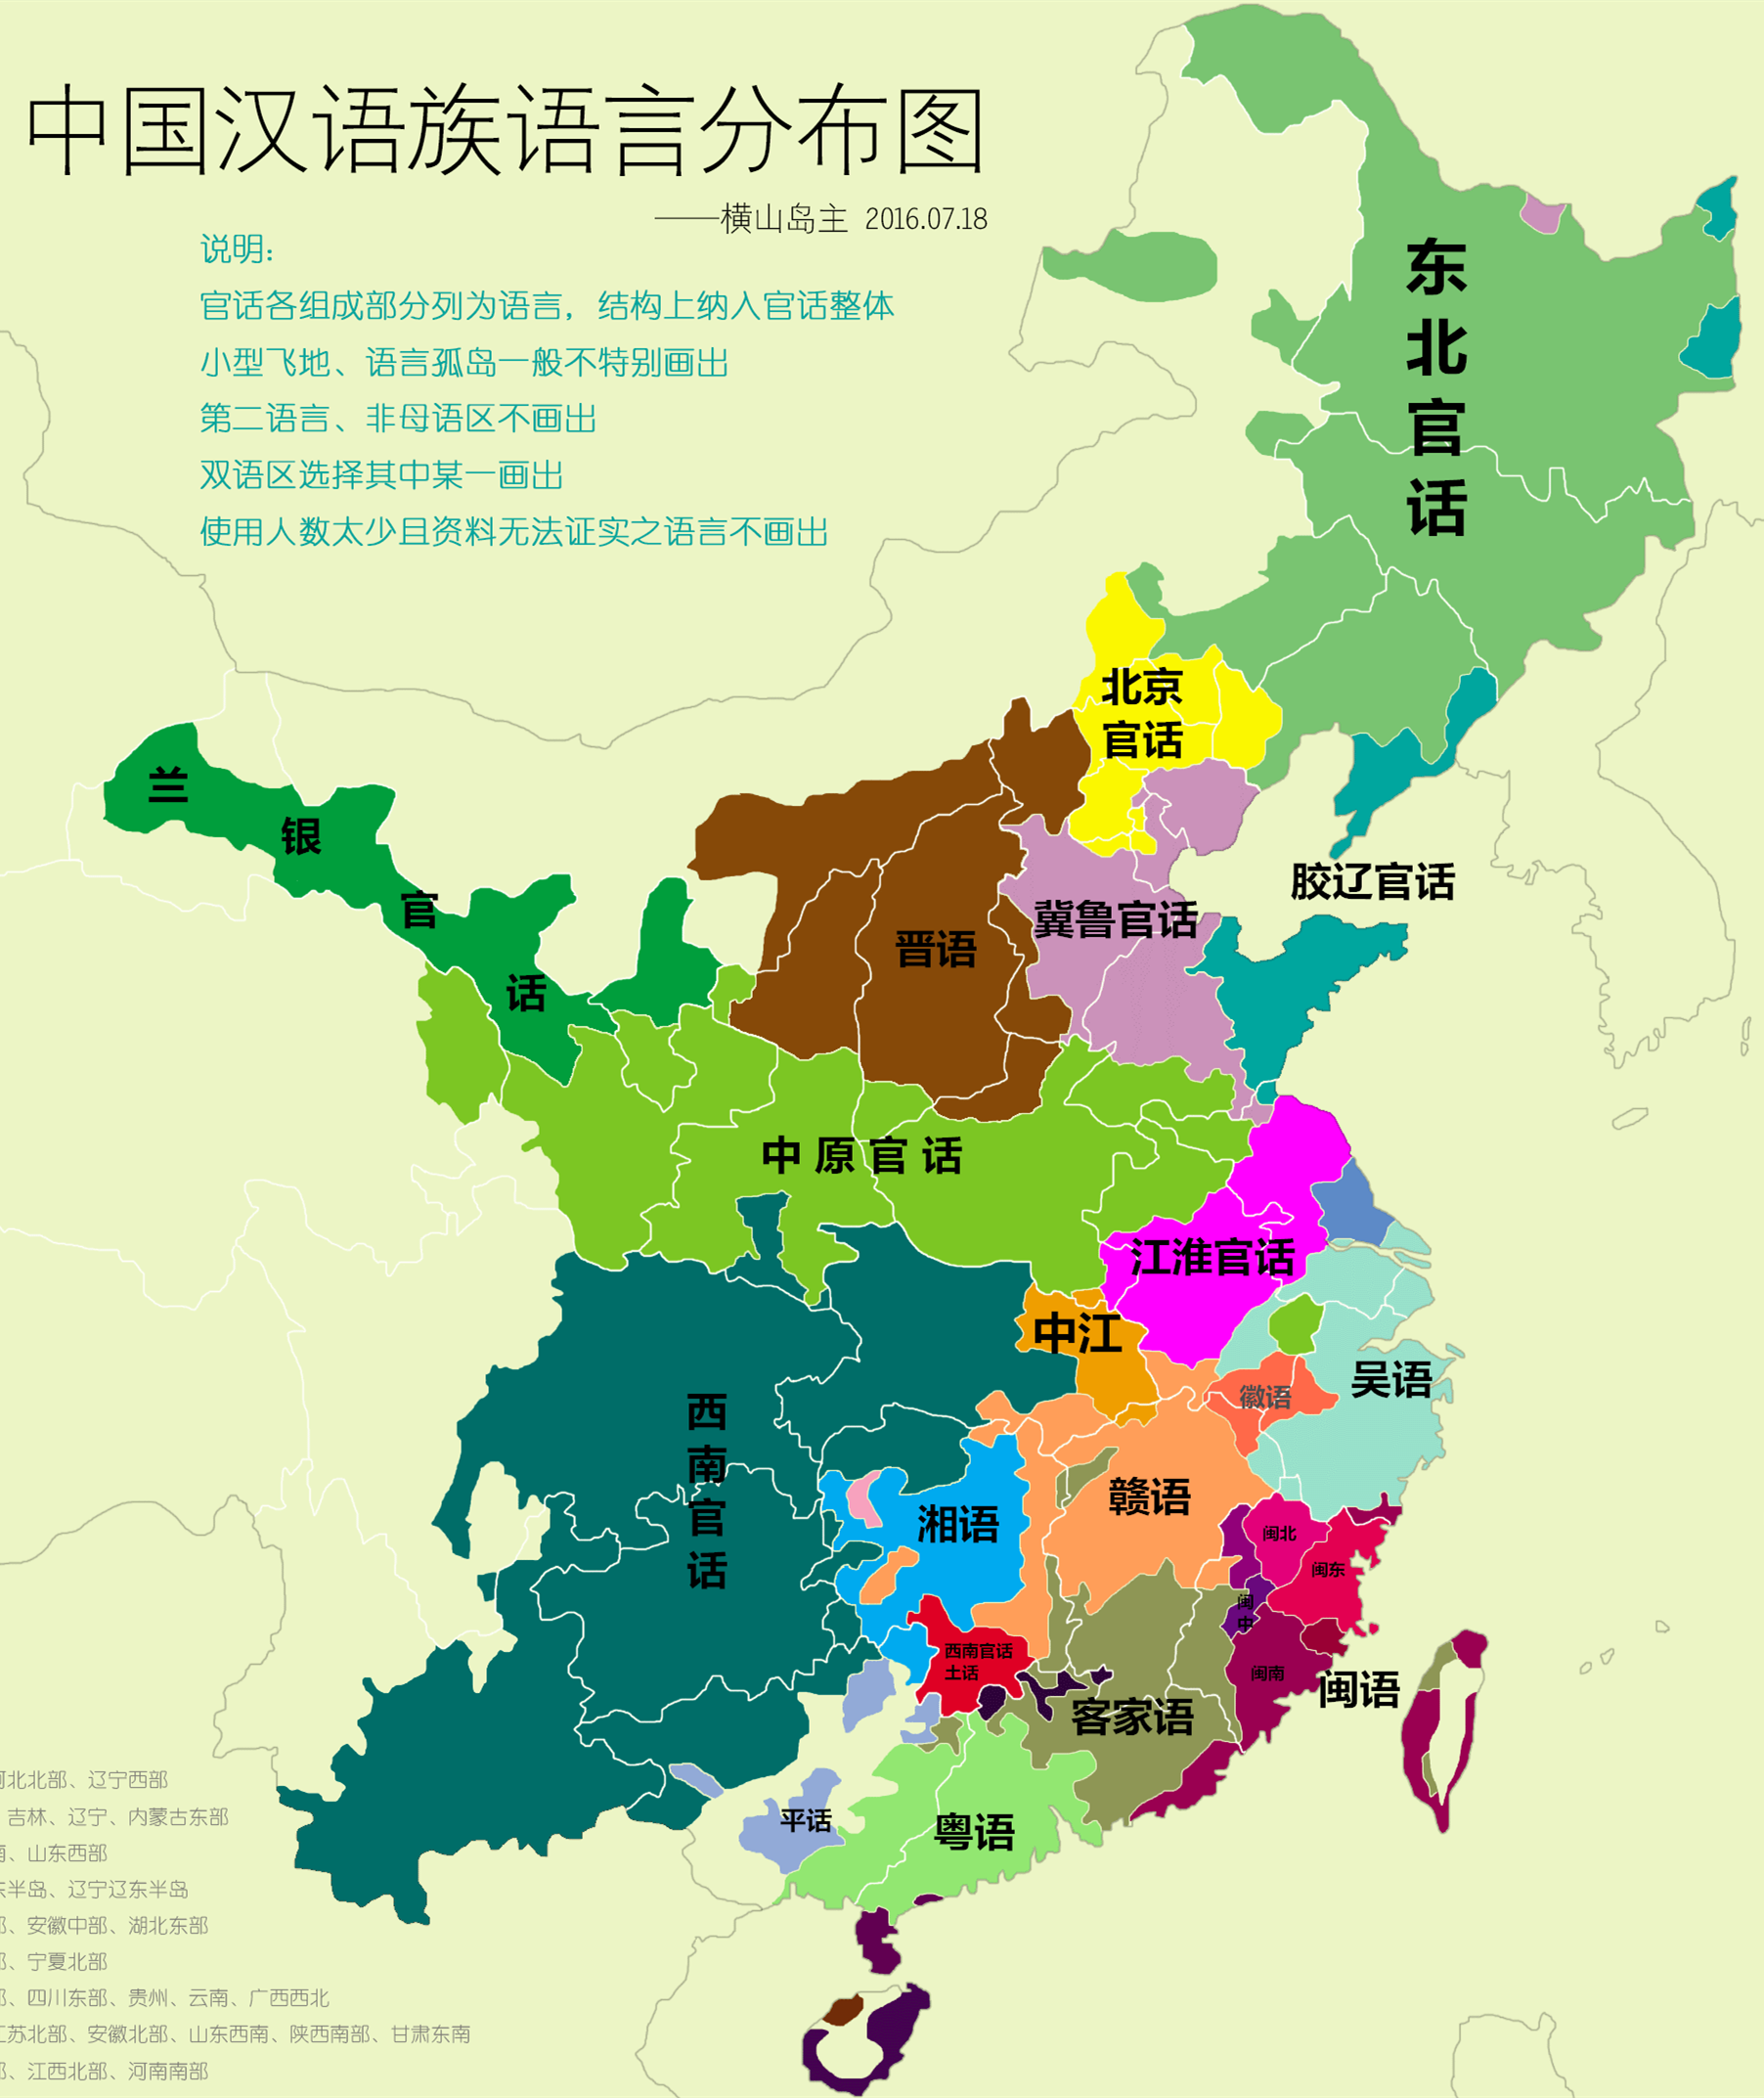 蒙古语方言分布图图片